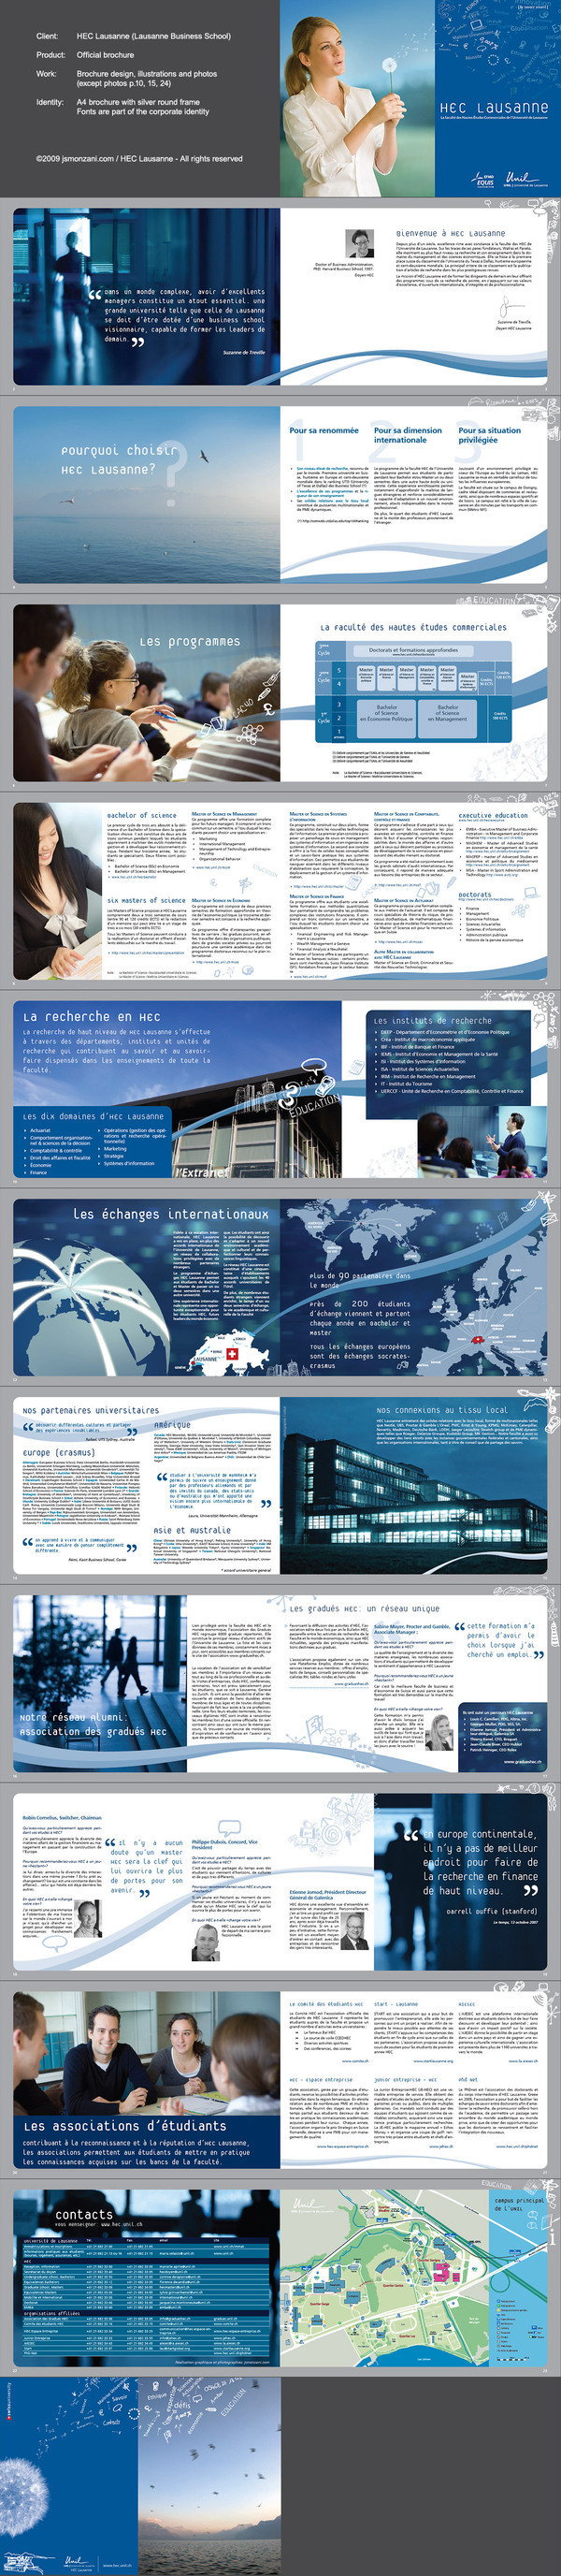 Lausanne business school University brochure print commercial